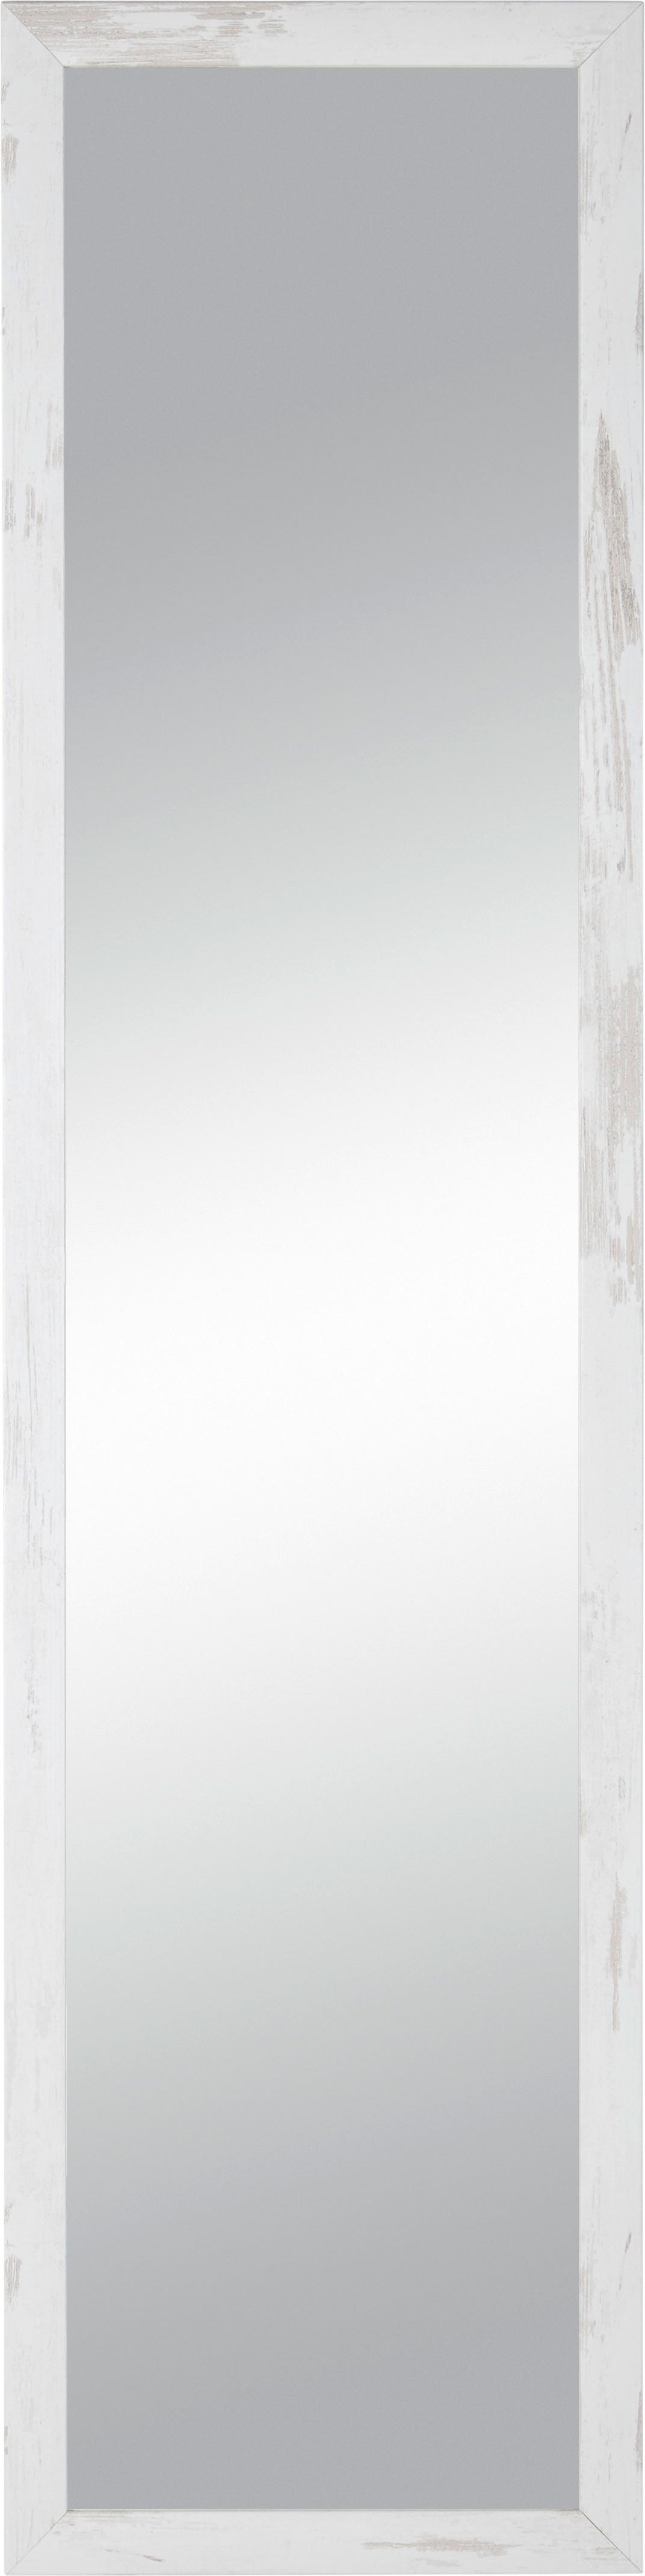 Nástěnné Zrcadlo Old-White-Heavy - bílá, kompozitní dřevo/sklo (40/160/2cm) - Modern Living